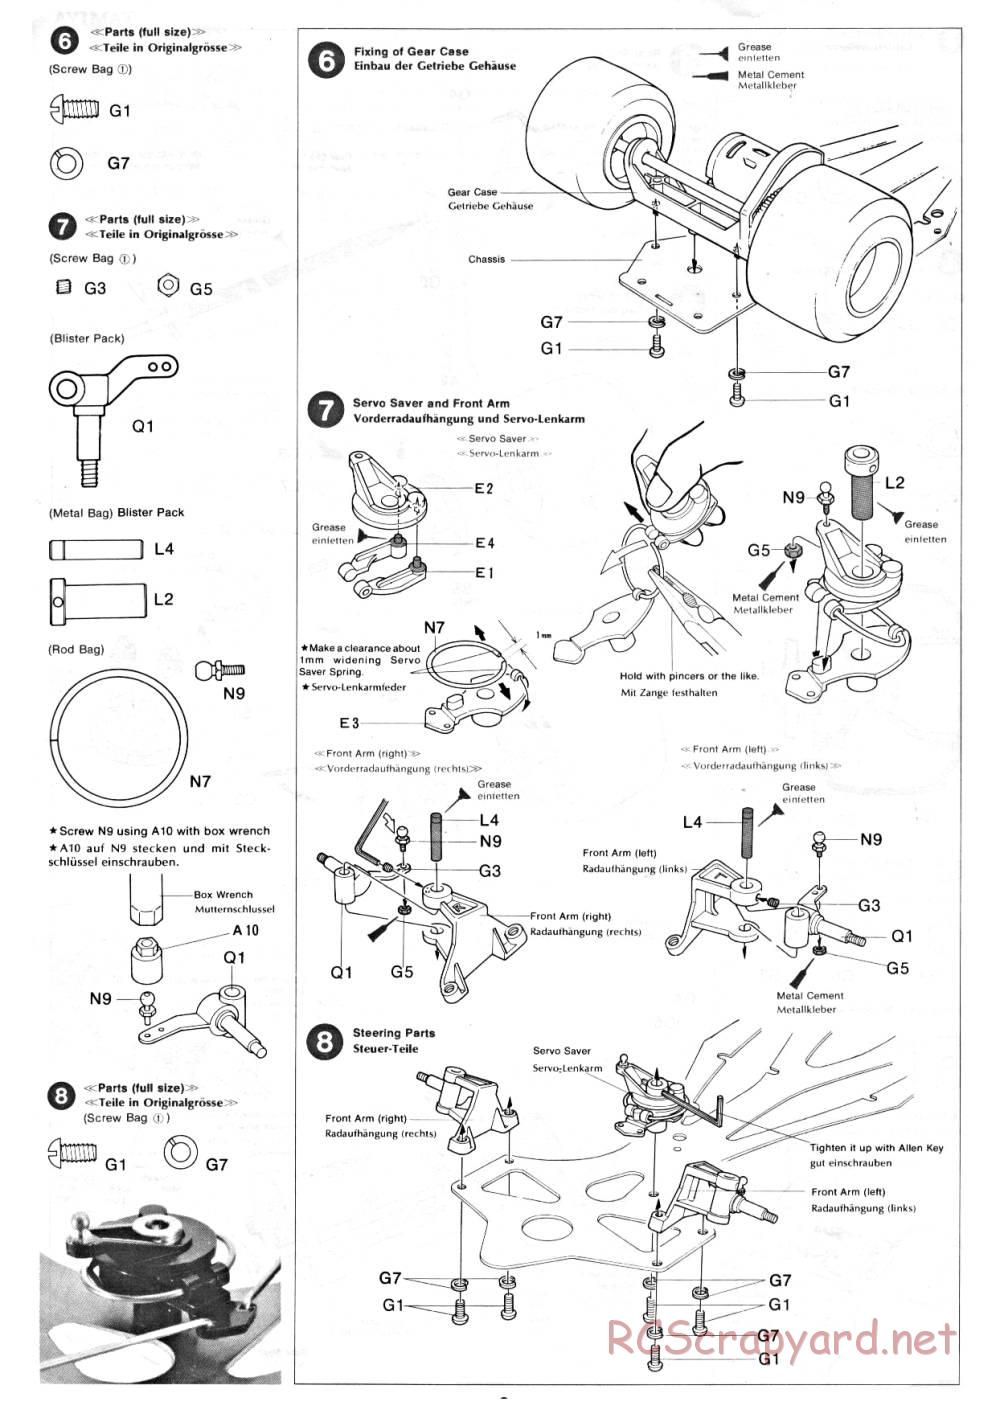 Tamiya - Ligier JS9 Matra - 58010 - Manual - Page 6